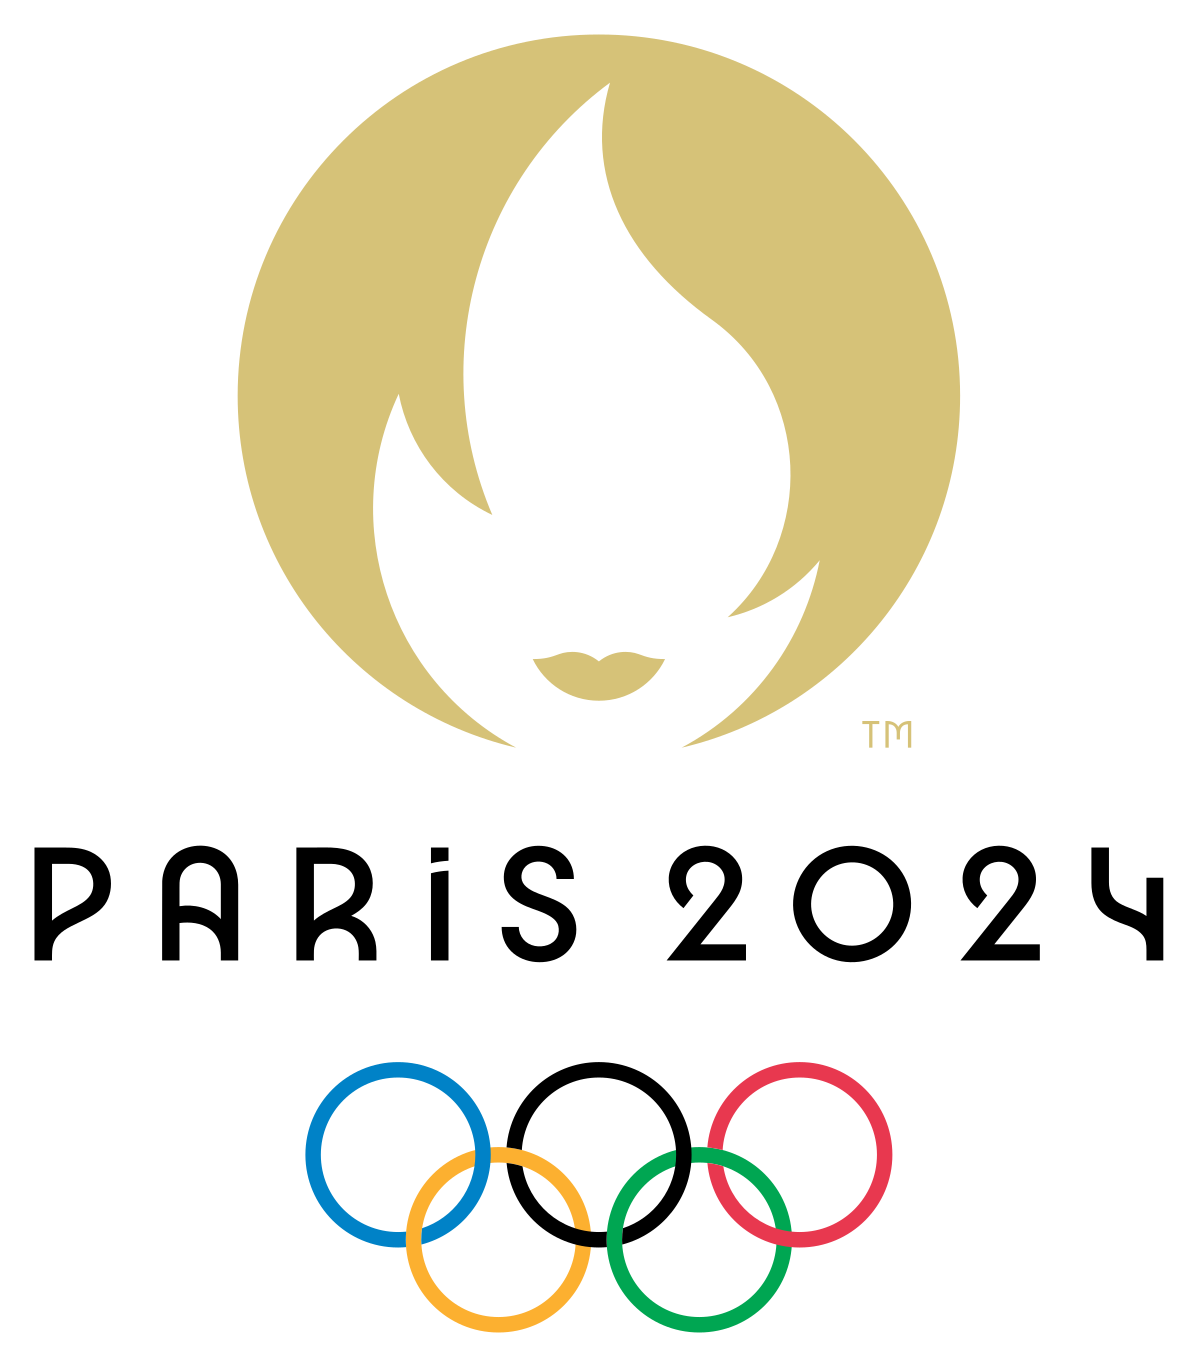 Olympisch kwalificatiesysteem van Parijs 2024 bovenaan de agenda van FEI Hybrid General Assembly 2022-overleg